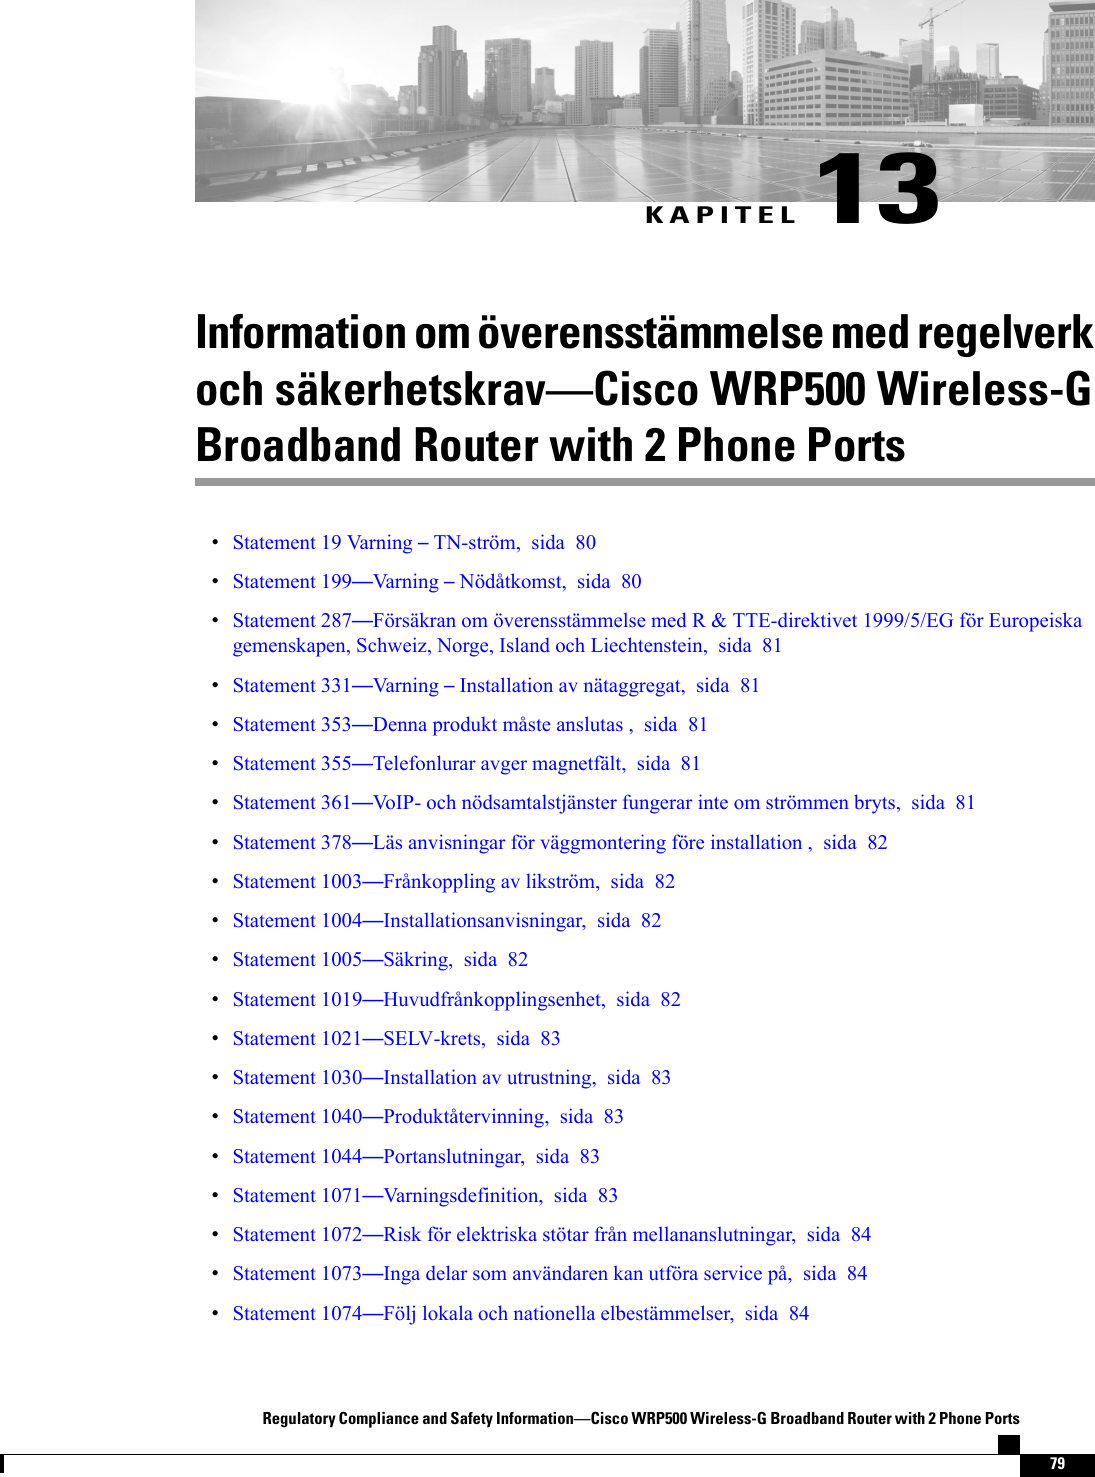 KAPITEL 13Information om överensstämmelse med regelverkoch säkerhetskravCisco WRP500 Wireless-GBroadband Router with 2 Phone PortsStatement 19 Varning TN-ström, sida 80Statement 199Varning Nödåtkomst, sida 80Statement 287Försäkran om överensstämmelse med R &amp; TTE-direktivet 1999/5/EG för Europeiskagemenskapen, Schweiz, Norge, Island och Liechtenstein, sida 81Statement 331Varning Installation av nätaggregat, sida 81Statement 353Denna produkt måste anslutas , sida 81Statement 355Telefonlurar avger magnetfält, sida 81Statement 361VoIP- och nödsamtalstjänster fungerar inte om strömmen bryts, sida 81Statement 378Läs anvisningar för väggmontering före installation , sida 82Statement 1003Frånkoppling av likström, sida 82Statement 1004Installationsanvisningar, sida 82Statement 1005Säkring, sida 82Statement 1019Huvudfrånkopplingsenhet, sida 82Statement 1021SELV-krets, sida 83Statement 1030Installation av utrustning, sida 83Statement 1040Produktåtervinning, sida 83Statement 1044Portanslutningar, sida 83Statement 1071Varningsdefinition, sida 83Statement 1072Risk för elektriska stötar från mellananslutningar, sida 84Statement 1073Inga delar som användaren kan utföra service på, sida 84Statement 1074Följ lokala och nationella elbestämmelser, sida 84Regulatory Compliance and Safety InformationCisco WRP500 Wireless-G Broadband Router with 2 Phone Ports79